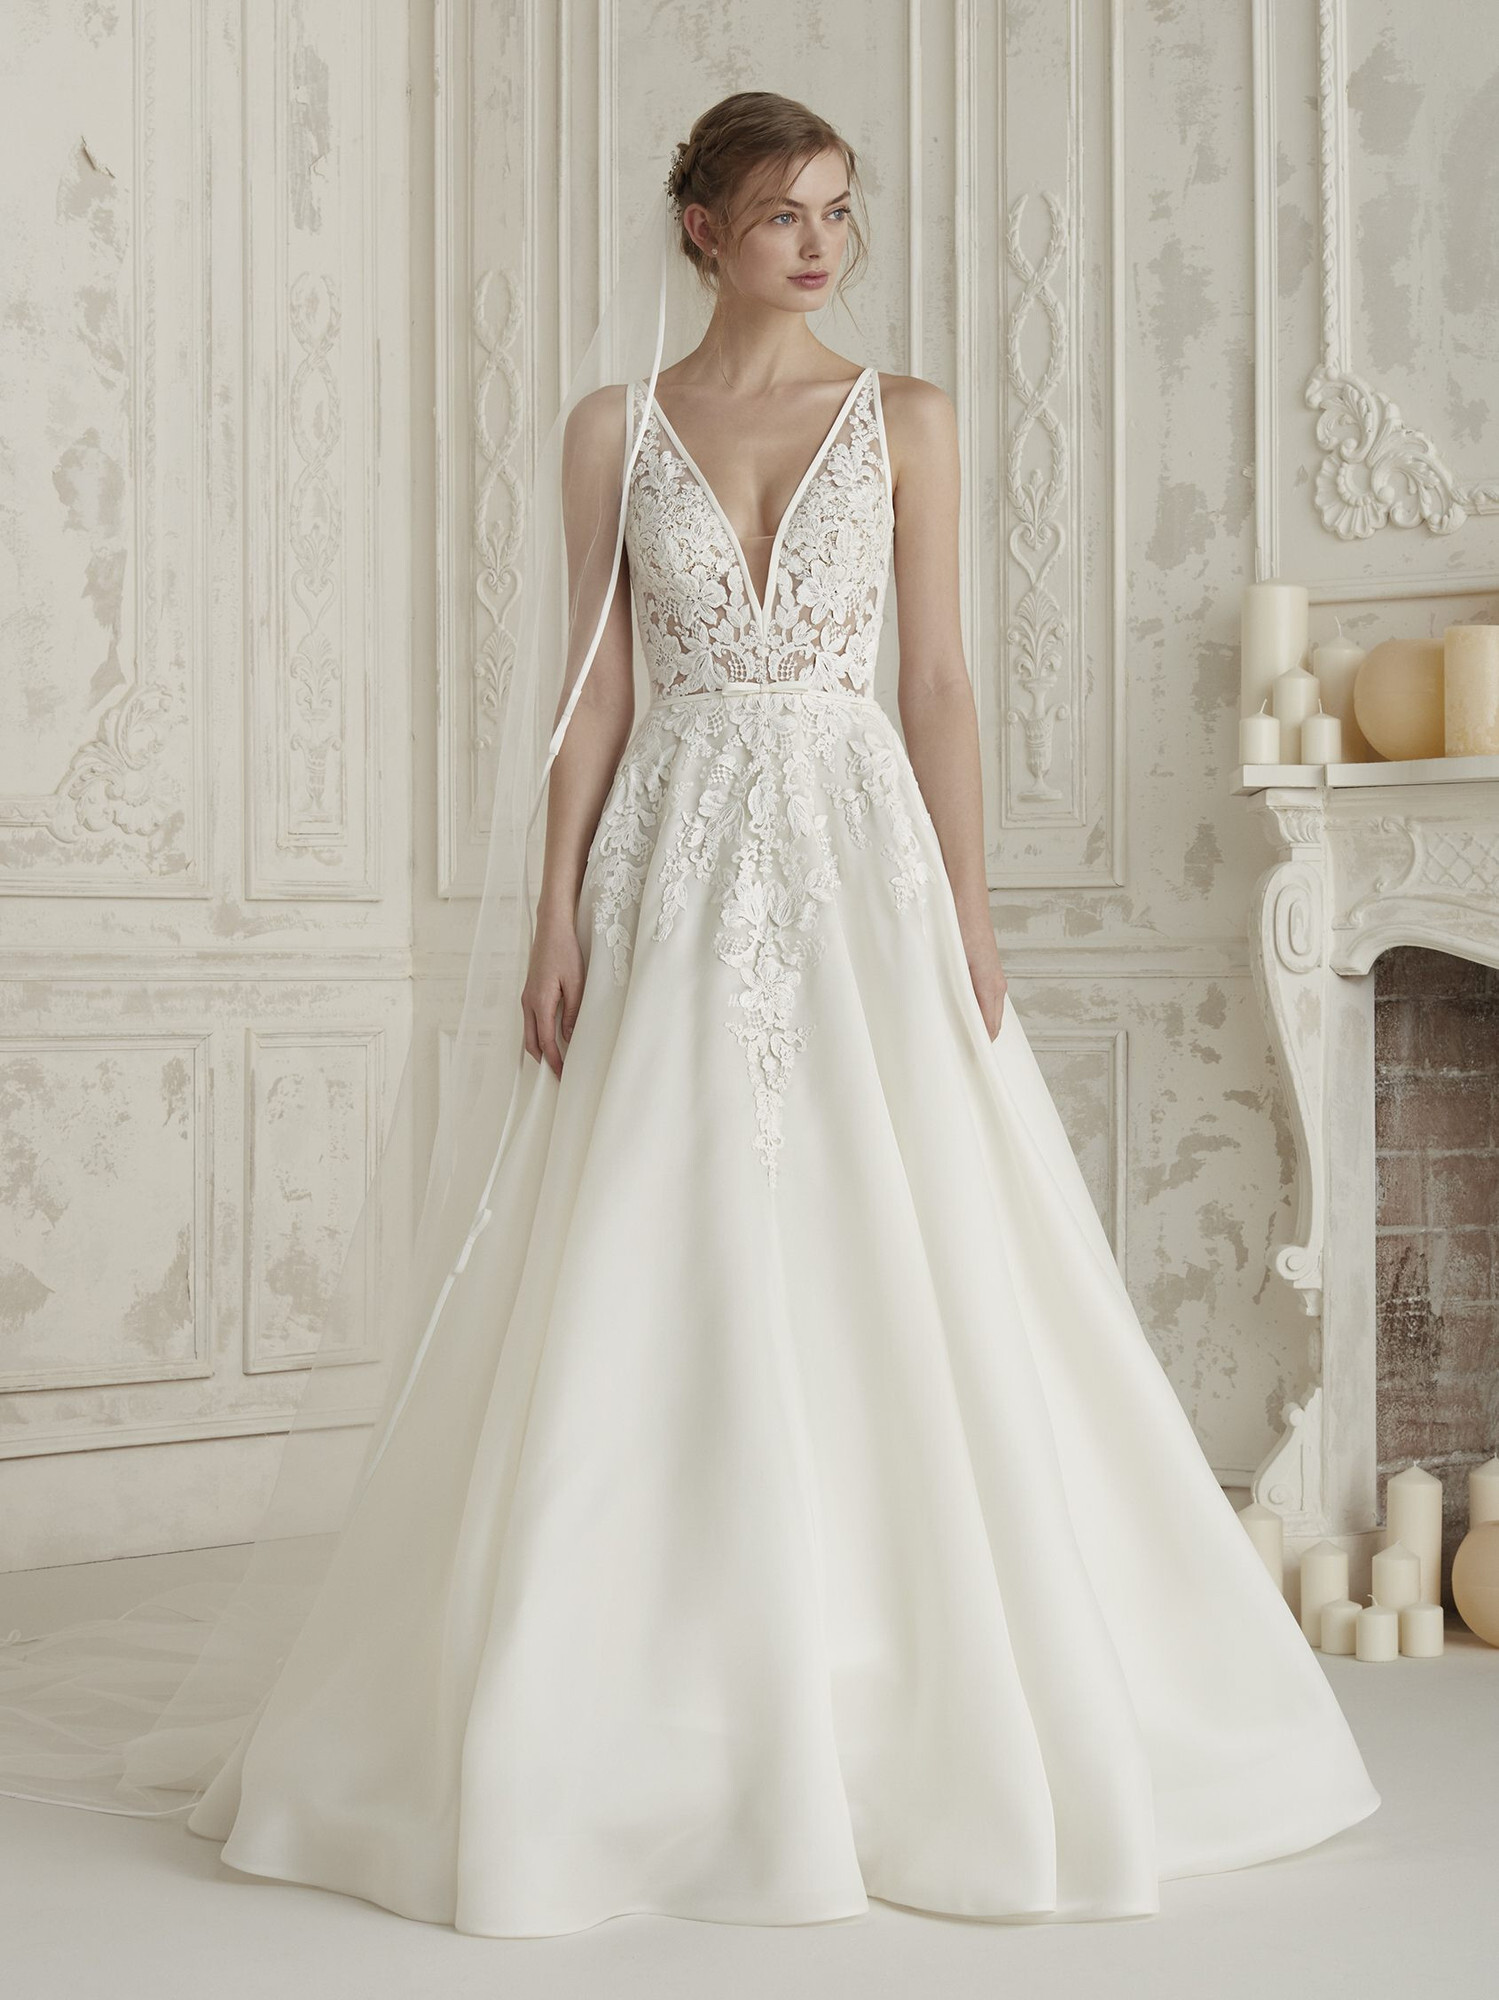 ELIS Wedding Dress from Pronovias - hitched.co.uk